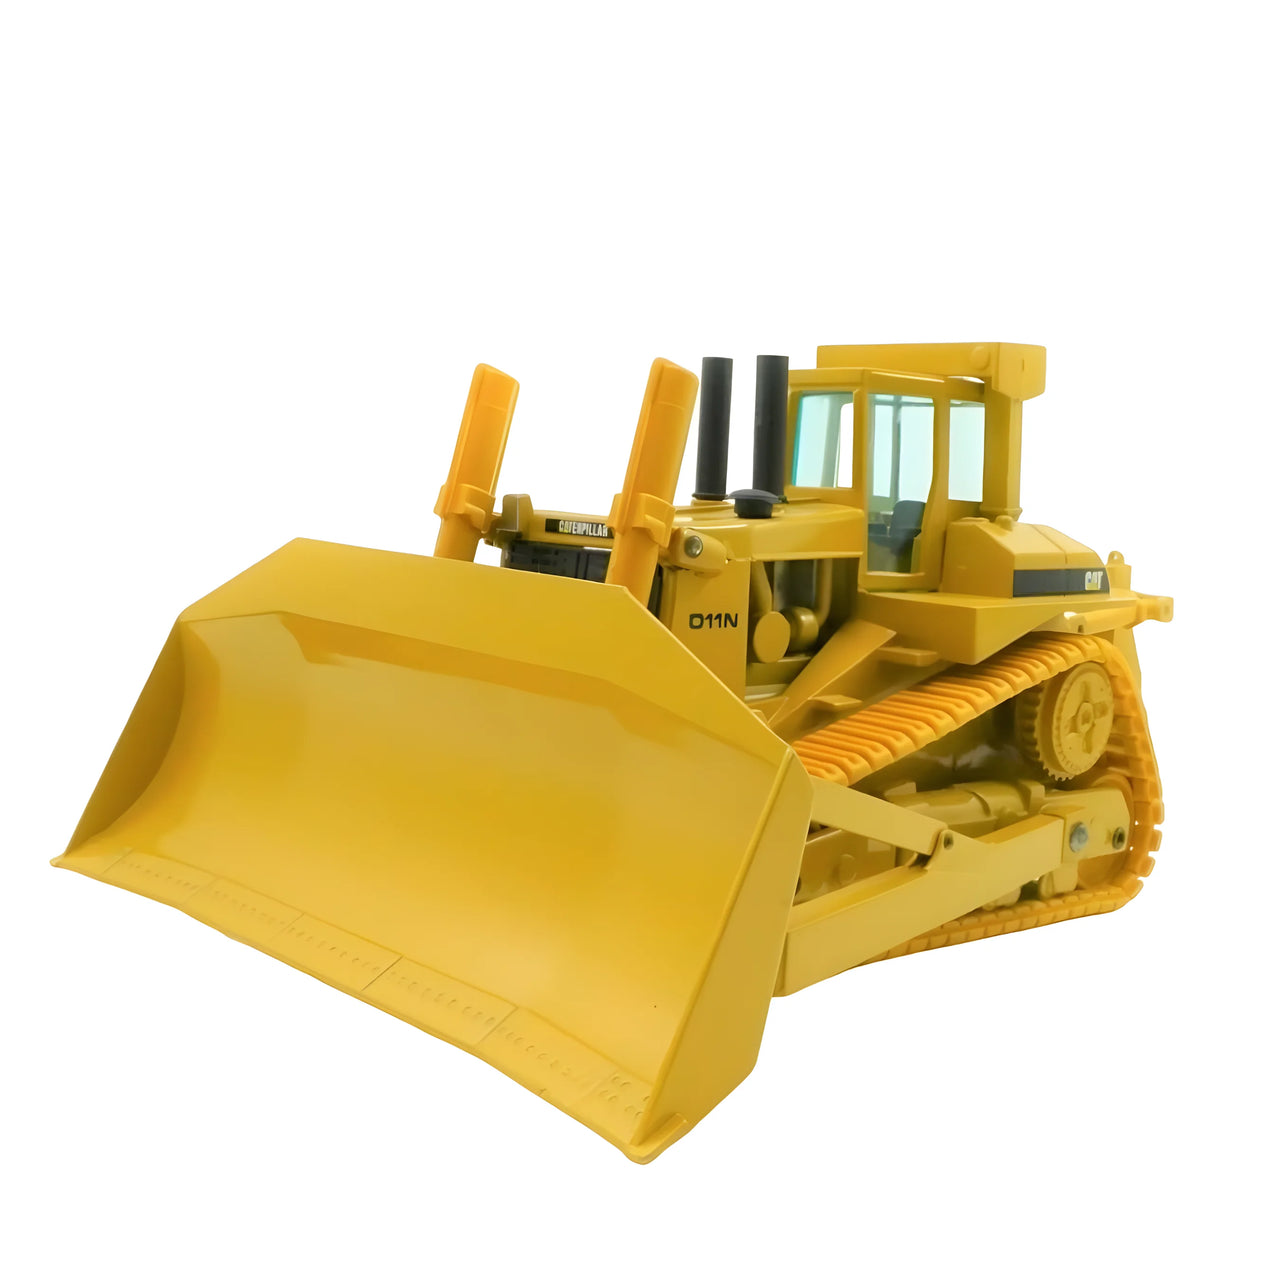 2852.0 Tractor De Orugas Caterpillar D11N Escala 1:50 (Modelo Descontinuado)